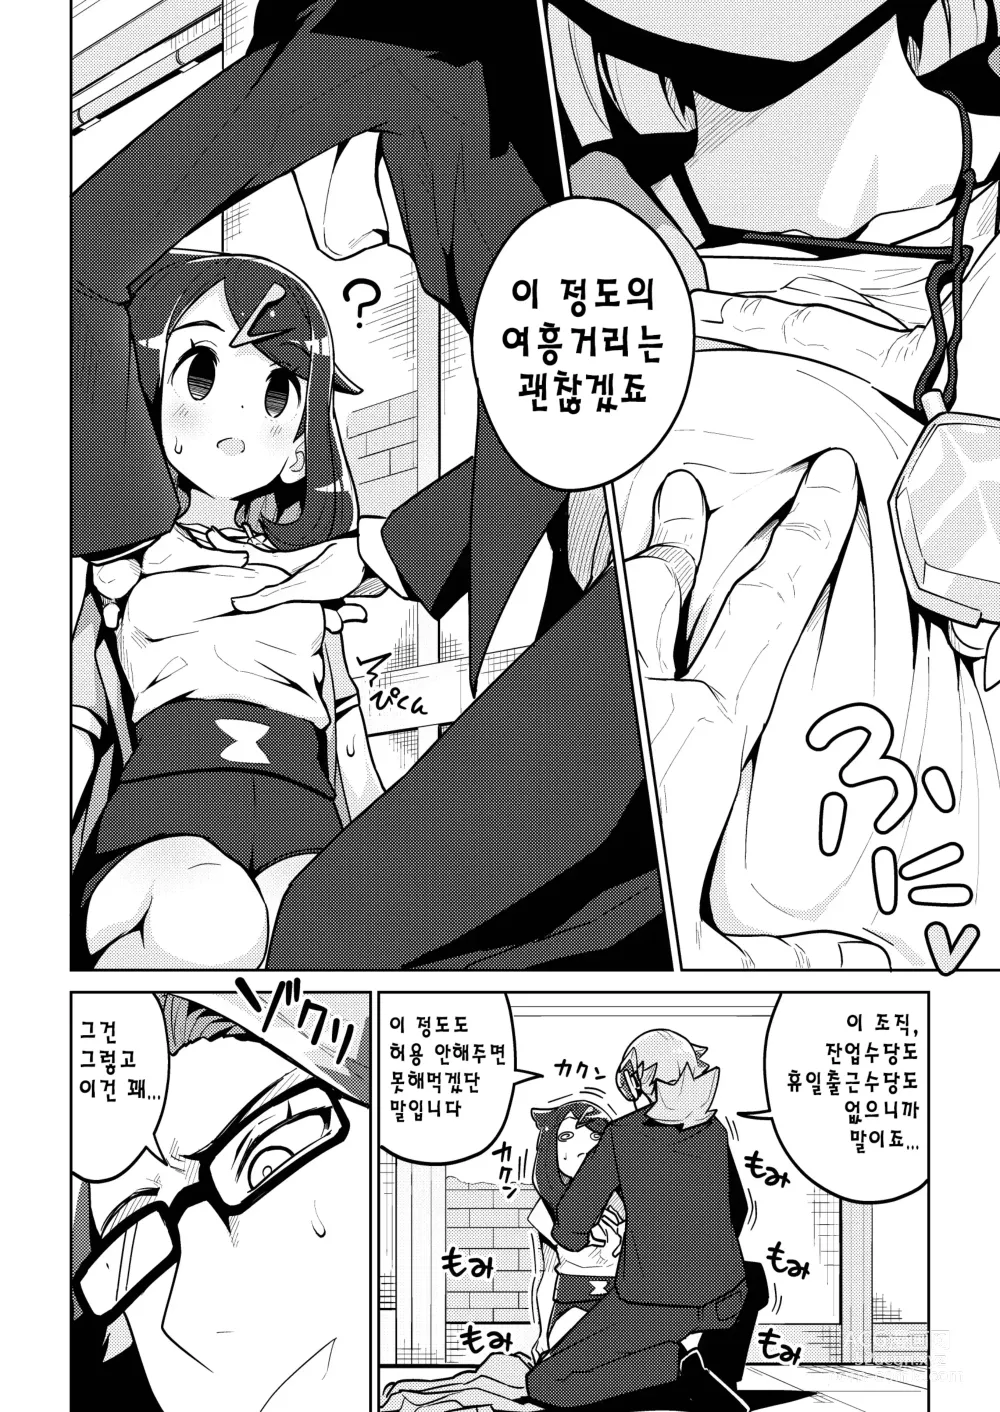 Page 3 of doujinshi 사이코파워라는건 대체 뭐죠?